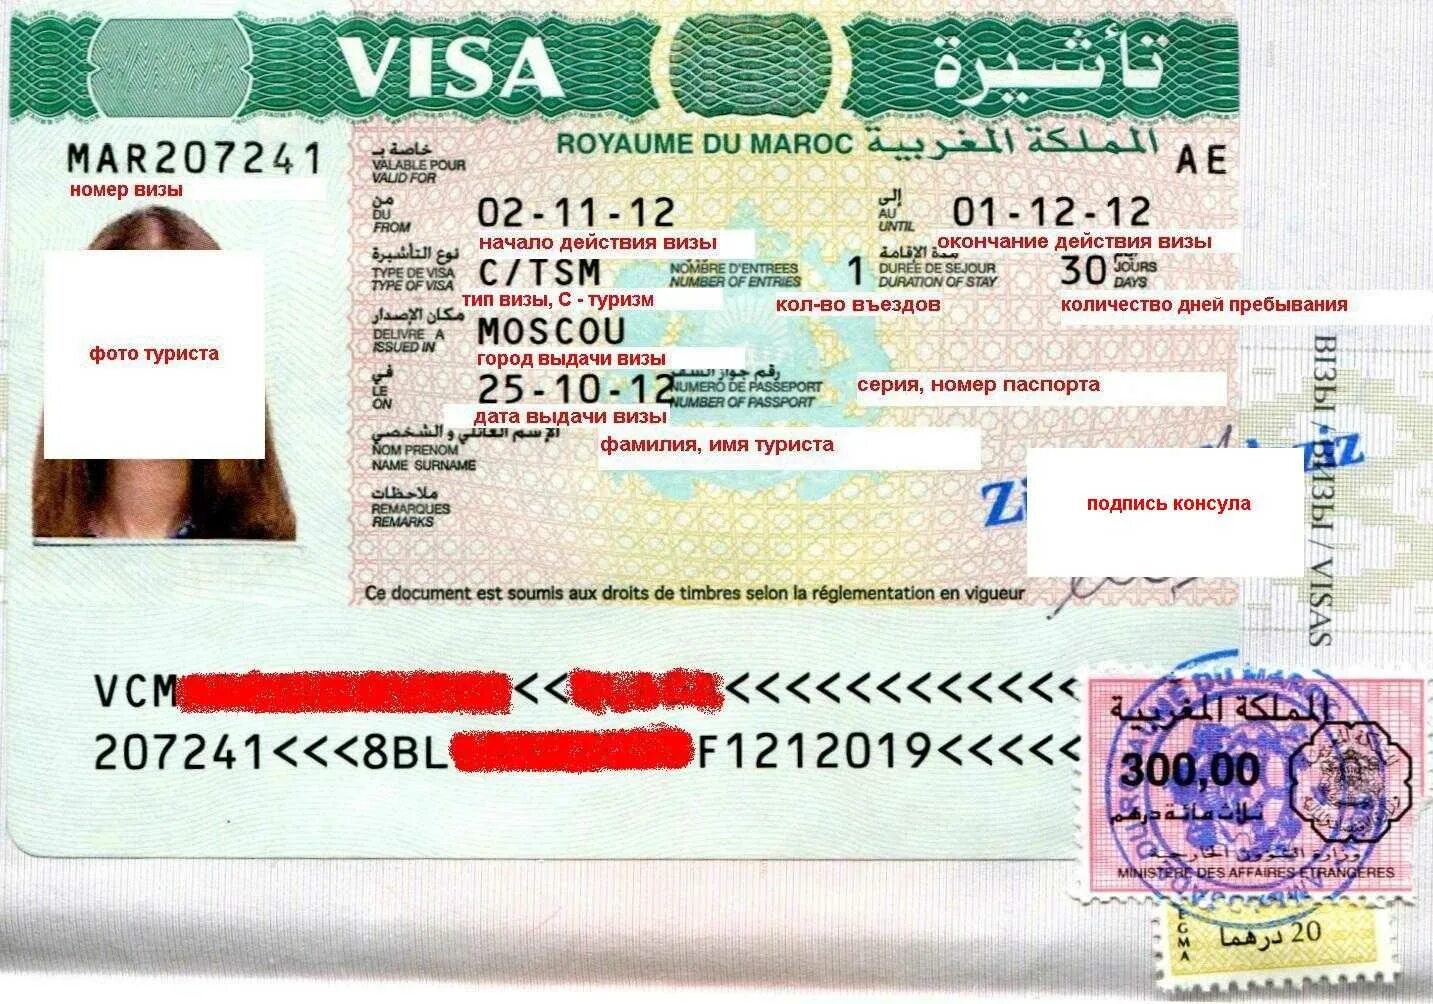 Виза. Долгосрочная виза. Туристическая виза. Марокко виза. Tourist visa